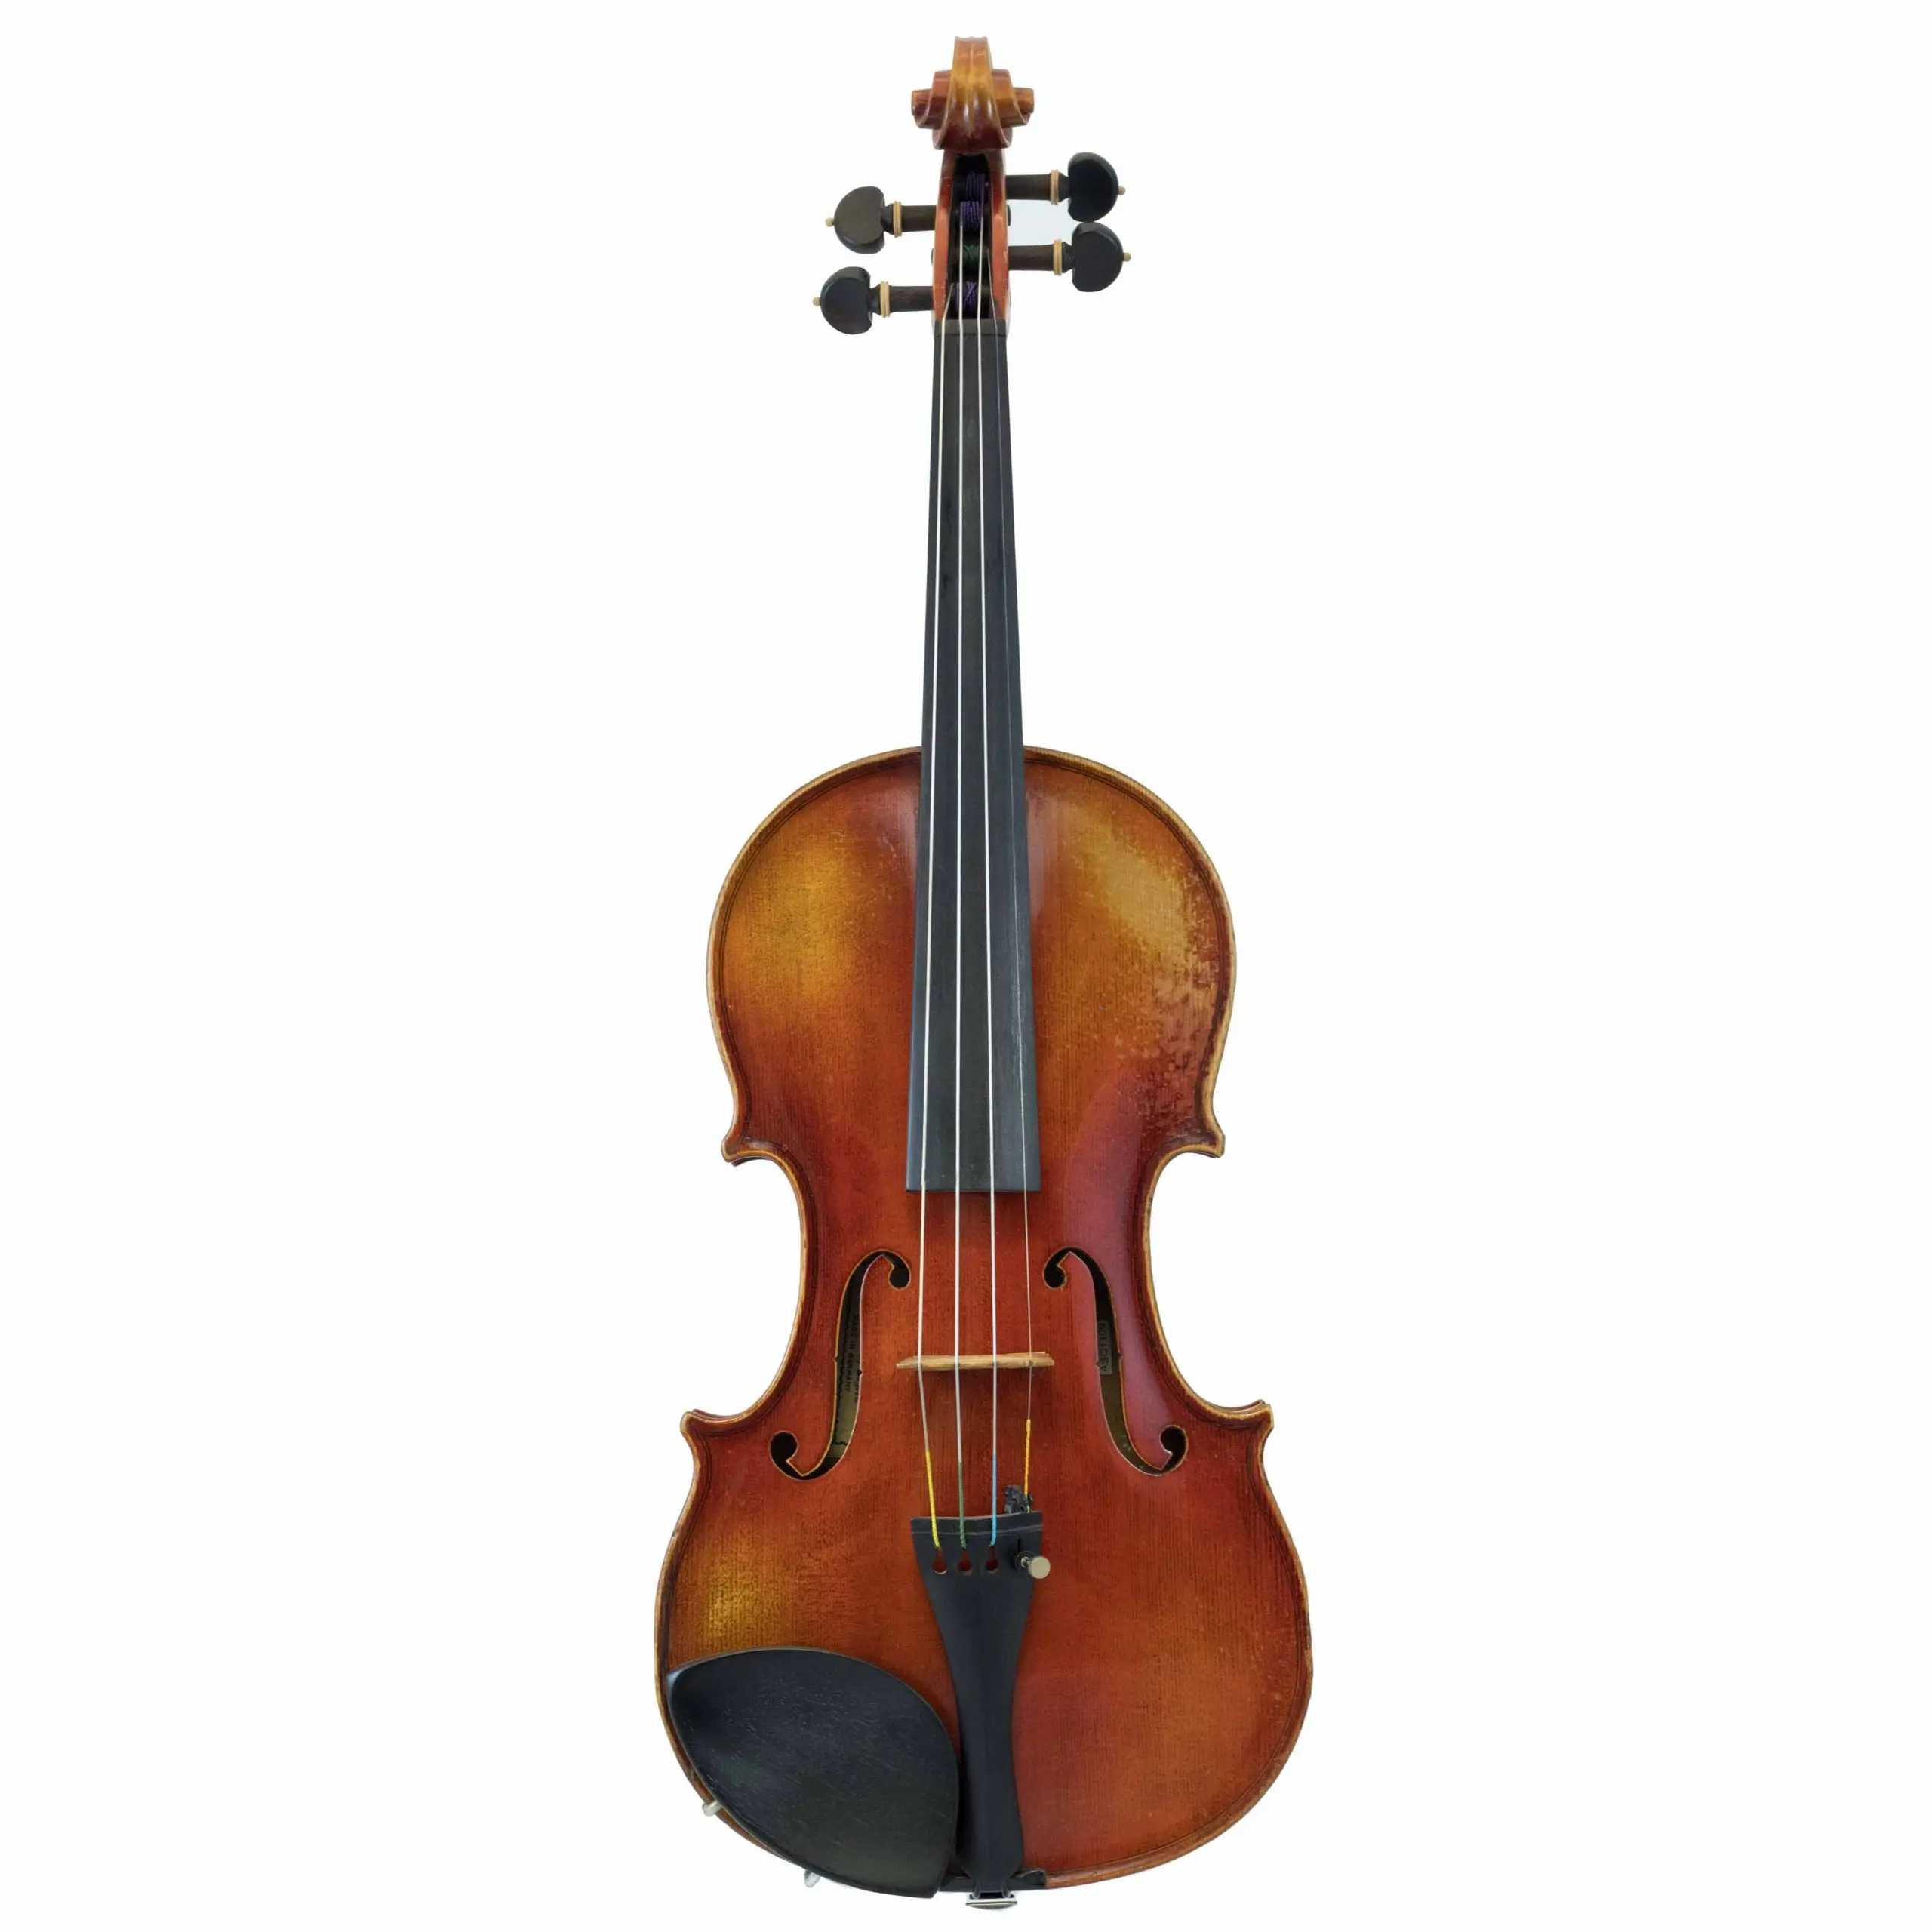 anton sch violines - Are Anton Breton violins good